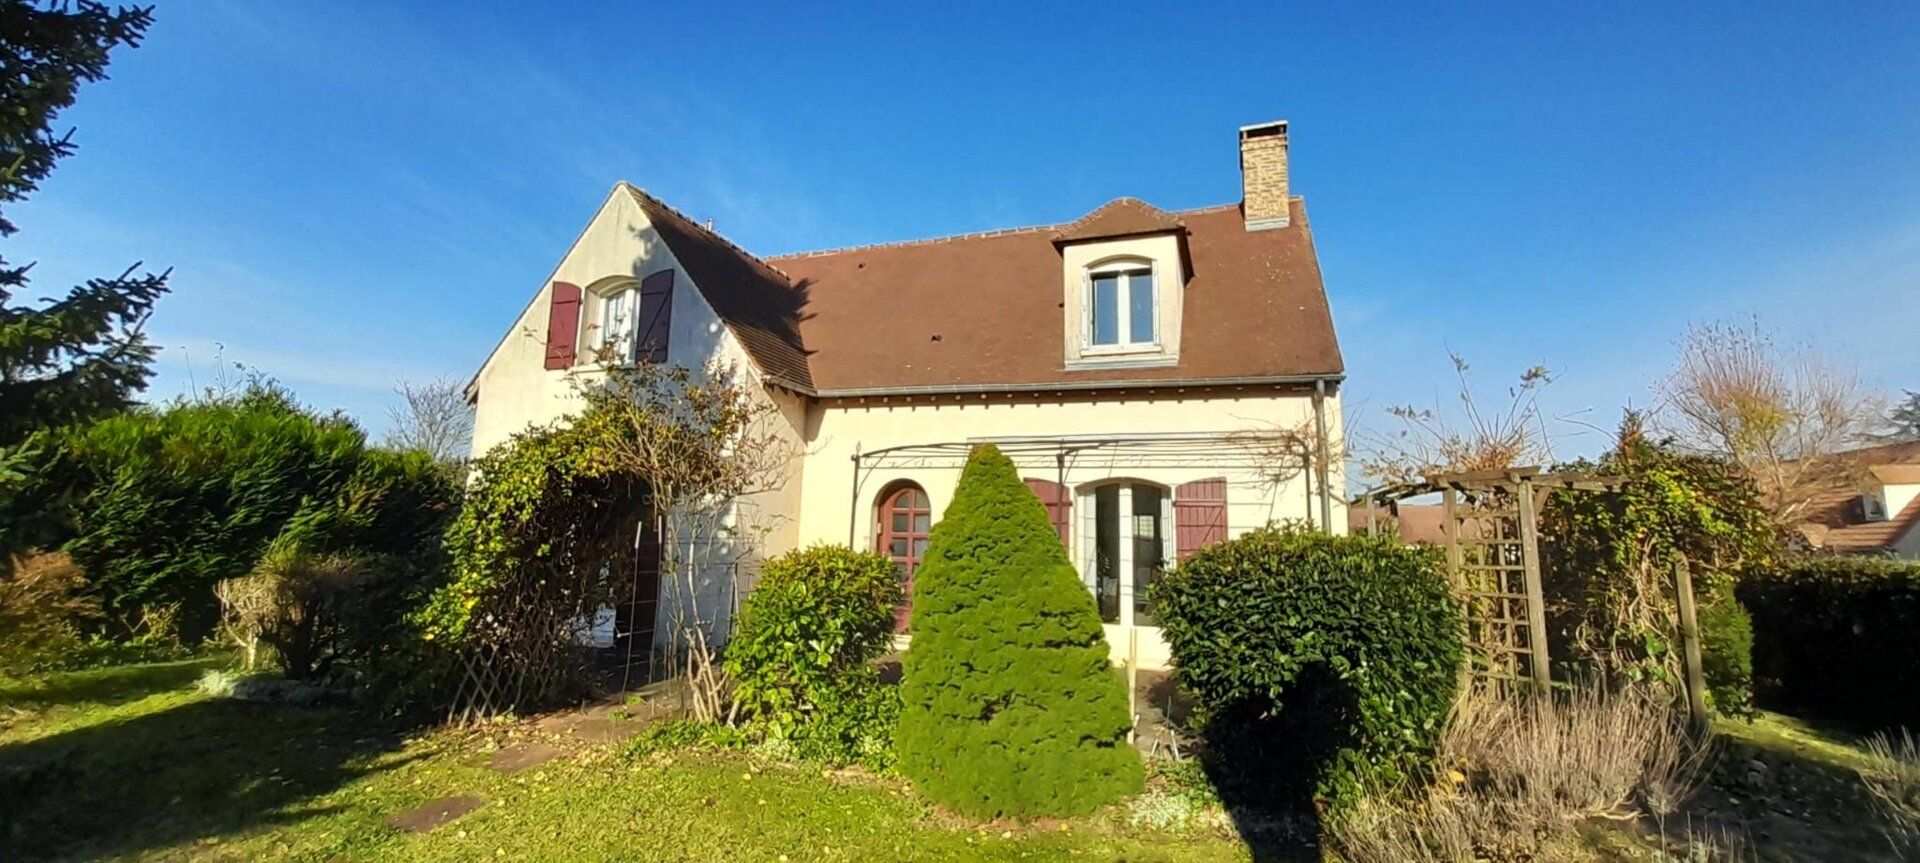 Maison à vendre 6 134m2 à Saint-Fargeau-Ponthierry vignette-2